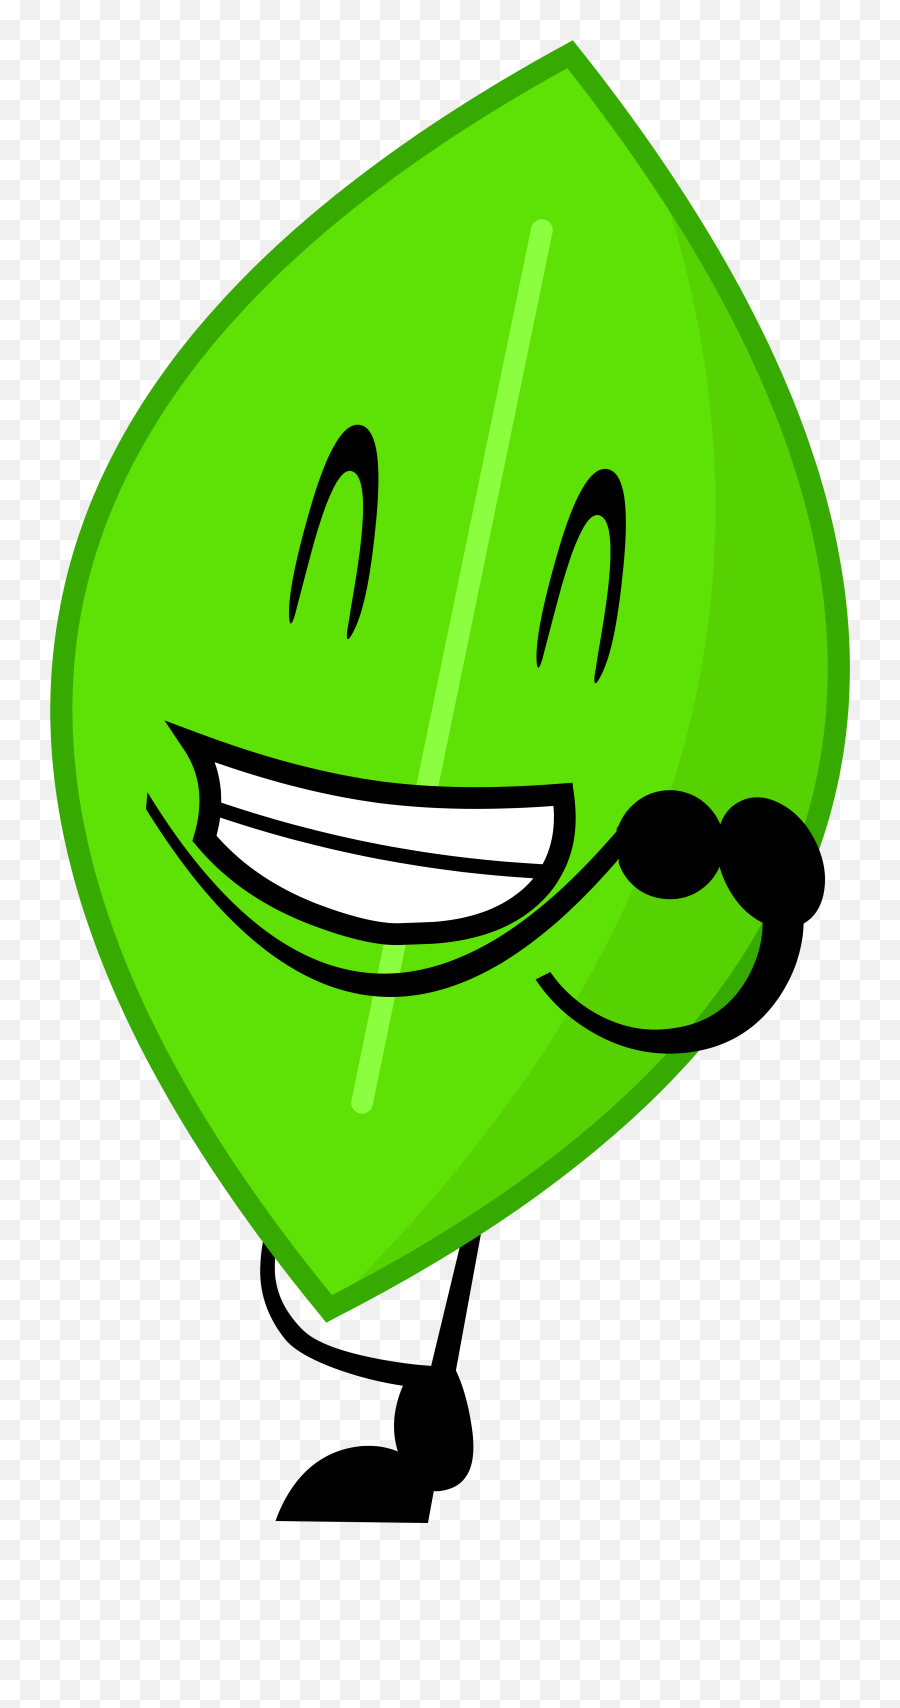 Leafy - Battle For Dream Island Leafy Emoji,Deep Fried Laughing Emoji